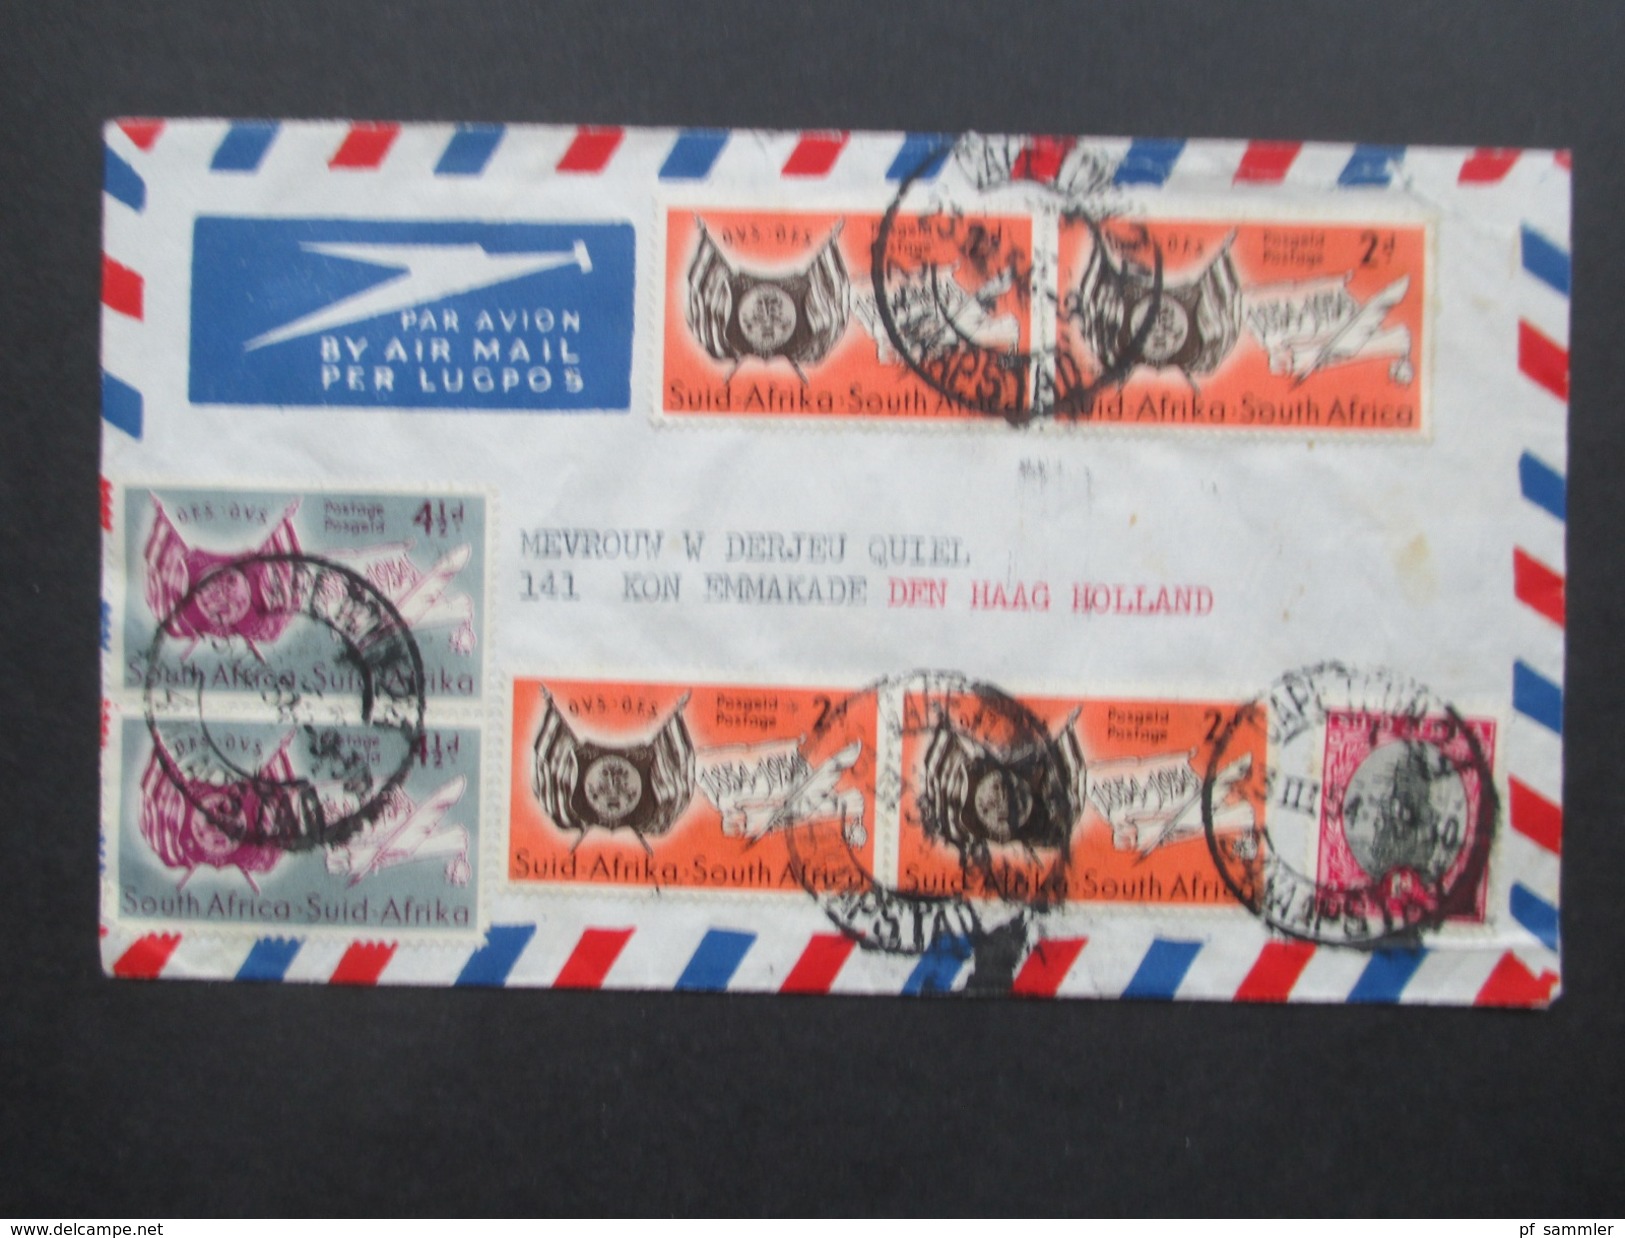 Südafrika Capetown 1954 Brief Mit Interessanter MiF Nach Den Haag Holland. Luftpost / Air Mail - Storia Postale